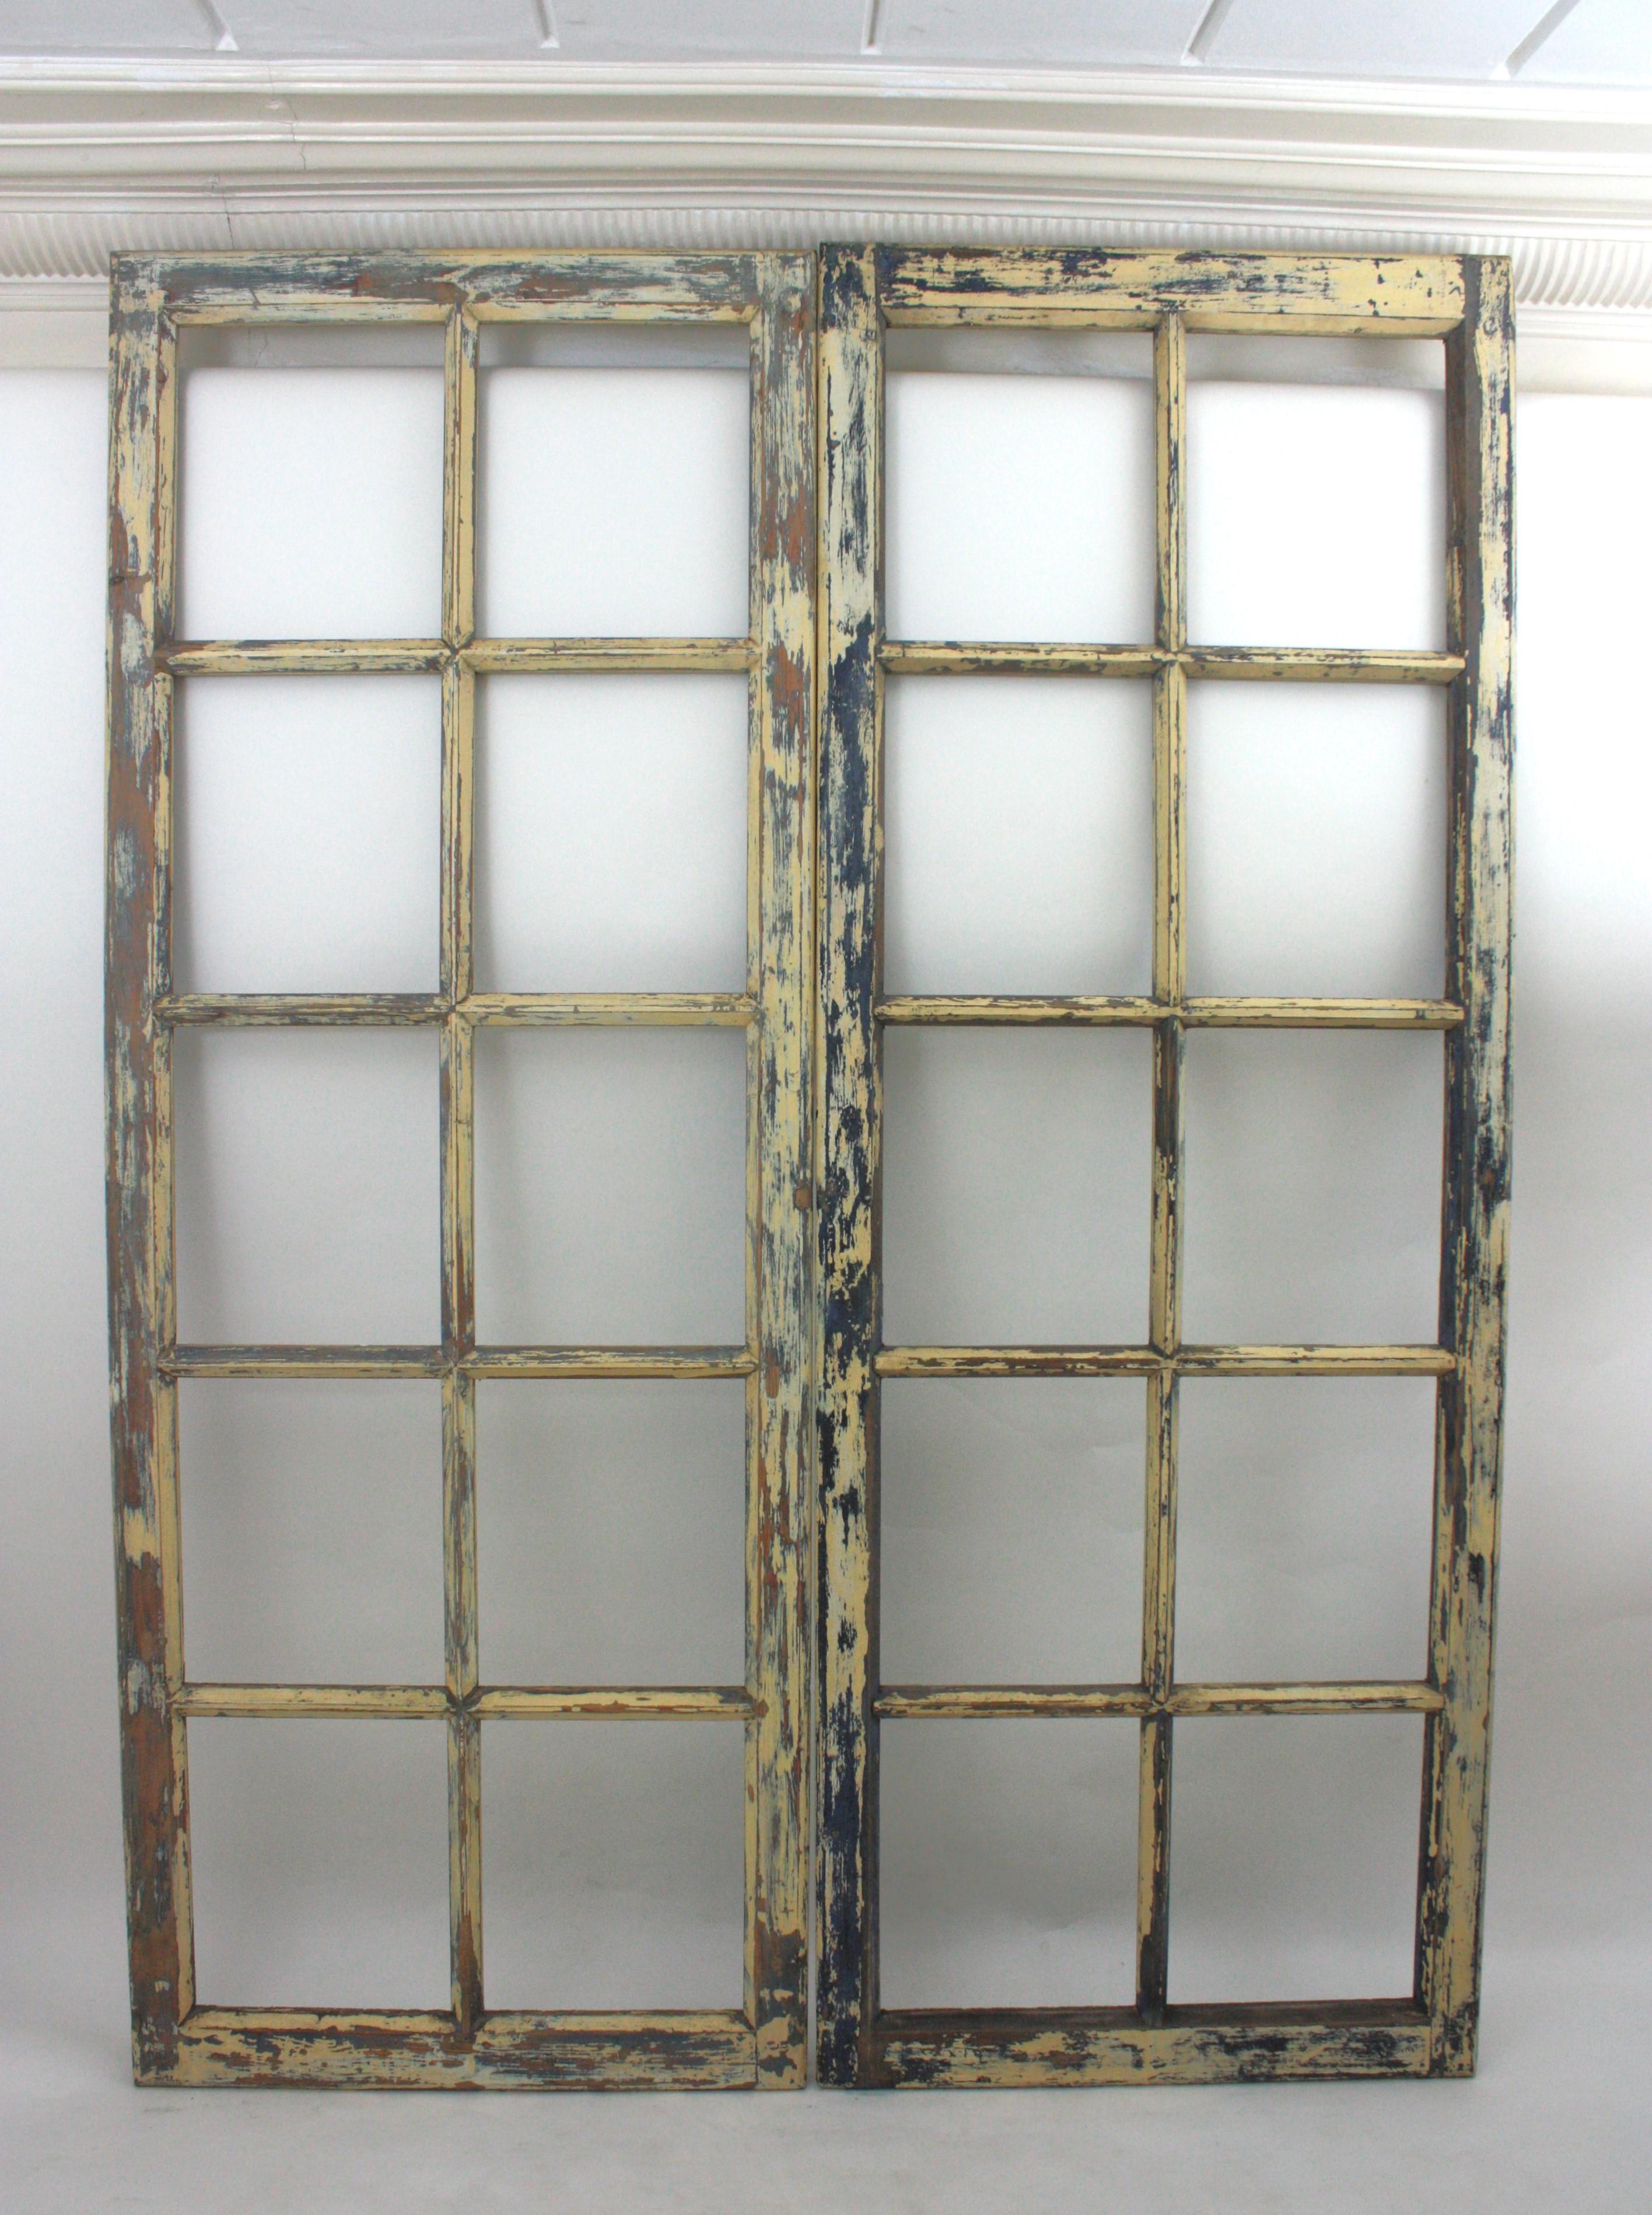 Antike getäfelte Holzfenster, die als Fenster oder Türen verwendet werden können, Spanien, 1930er-1940er Jahre.
Paar blau und ecrufarben lackierte industrielle Holzfenster mit Paneelen, die als Türen oder Fenster verwendet werden können  oder